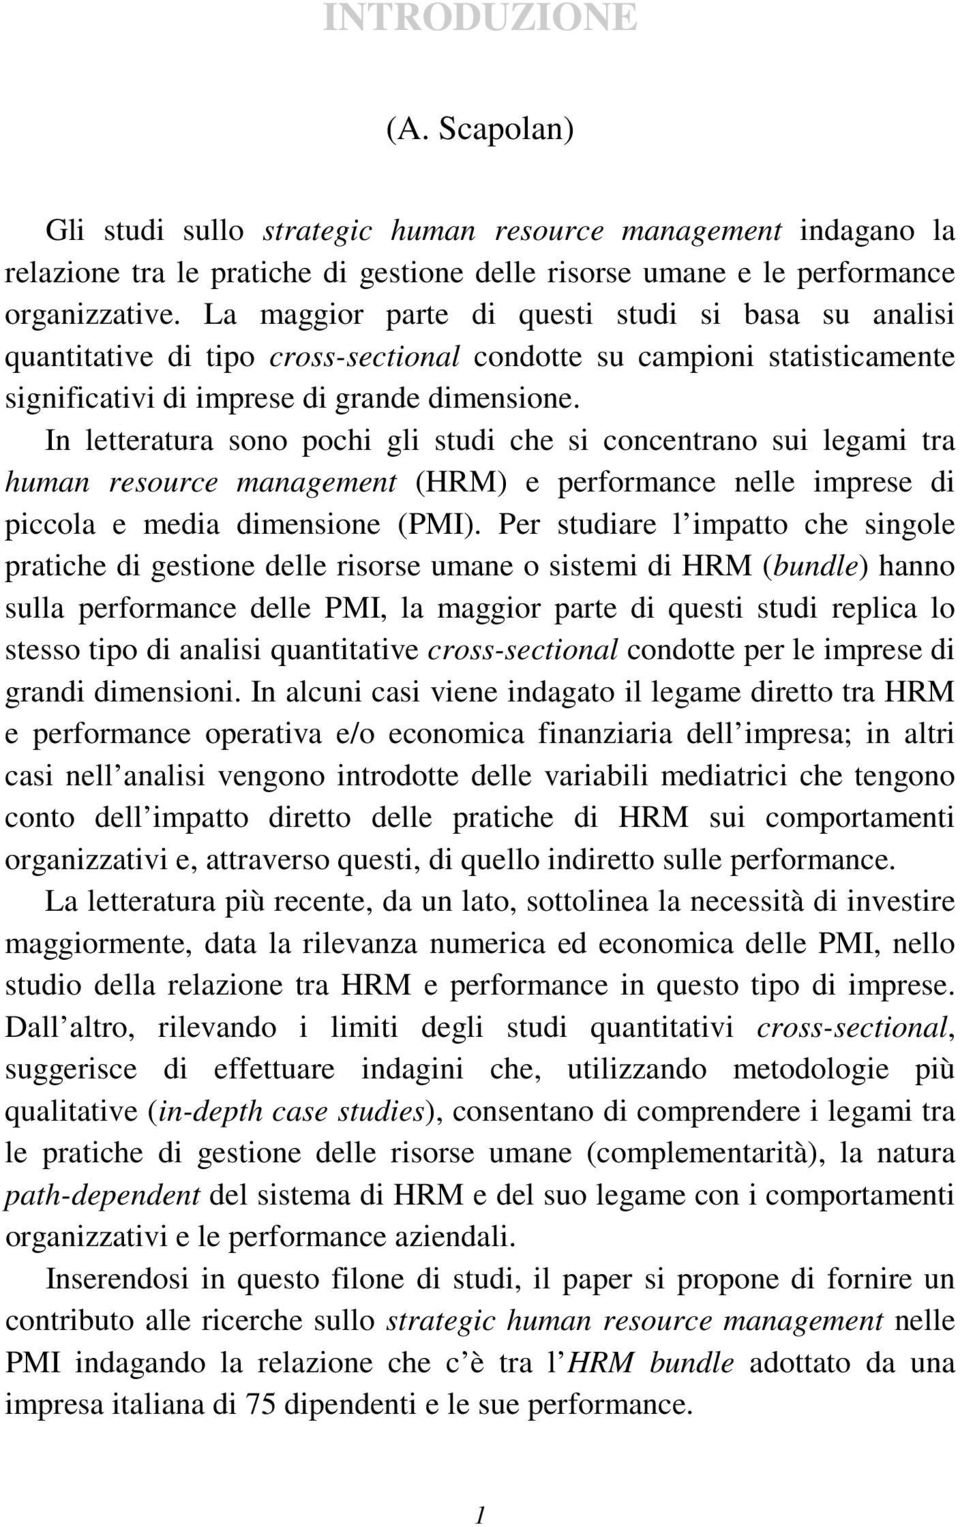 In letteratura sono pochi gli studi che si concentrano sui legami tra human resource management (HRM) e performance nelle imprese di piccola e media dimensione (PMI).